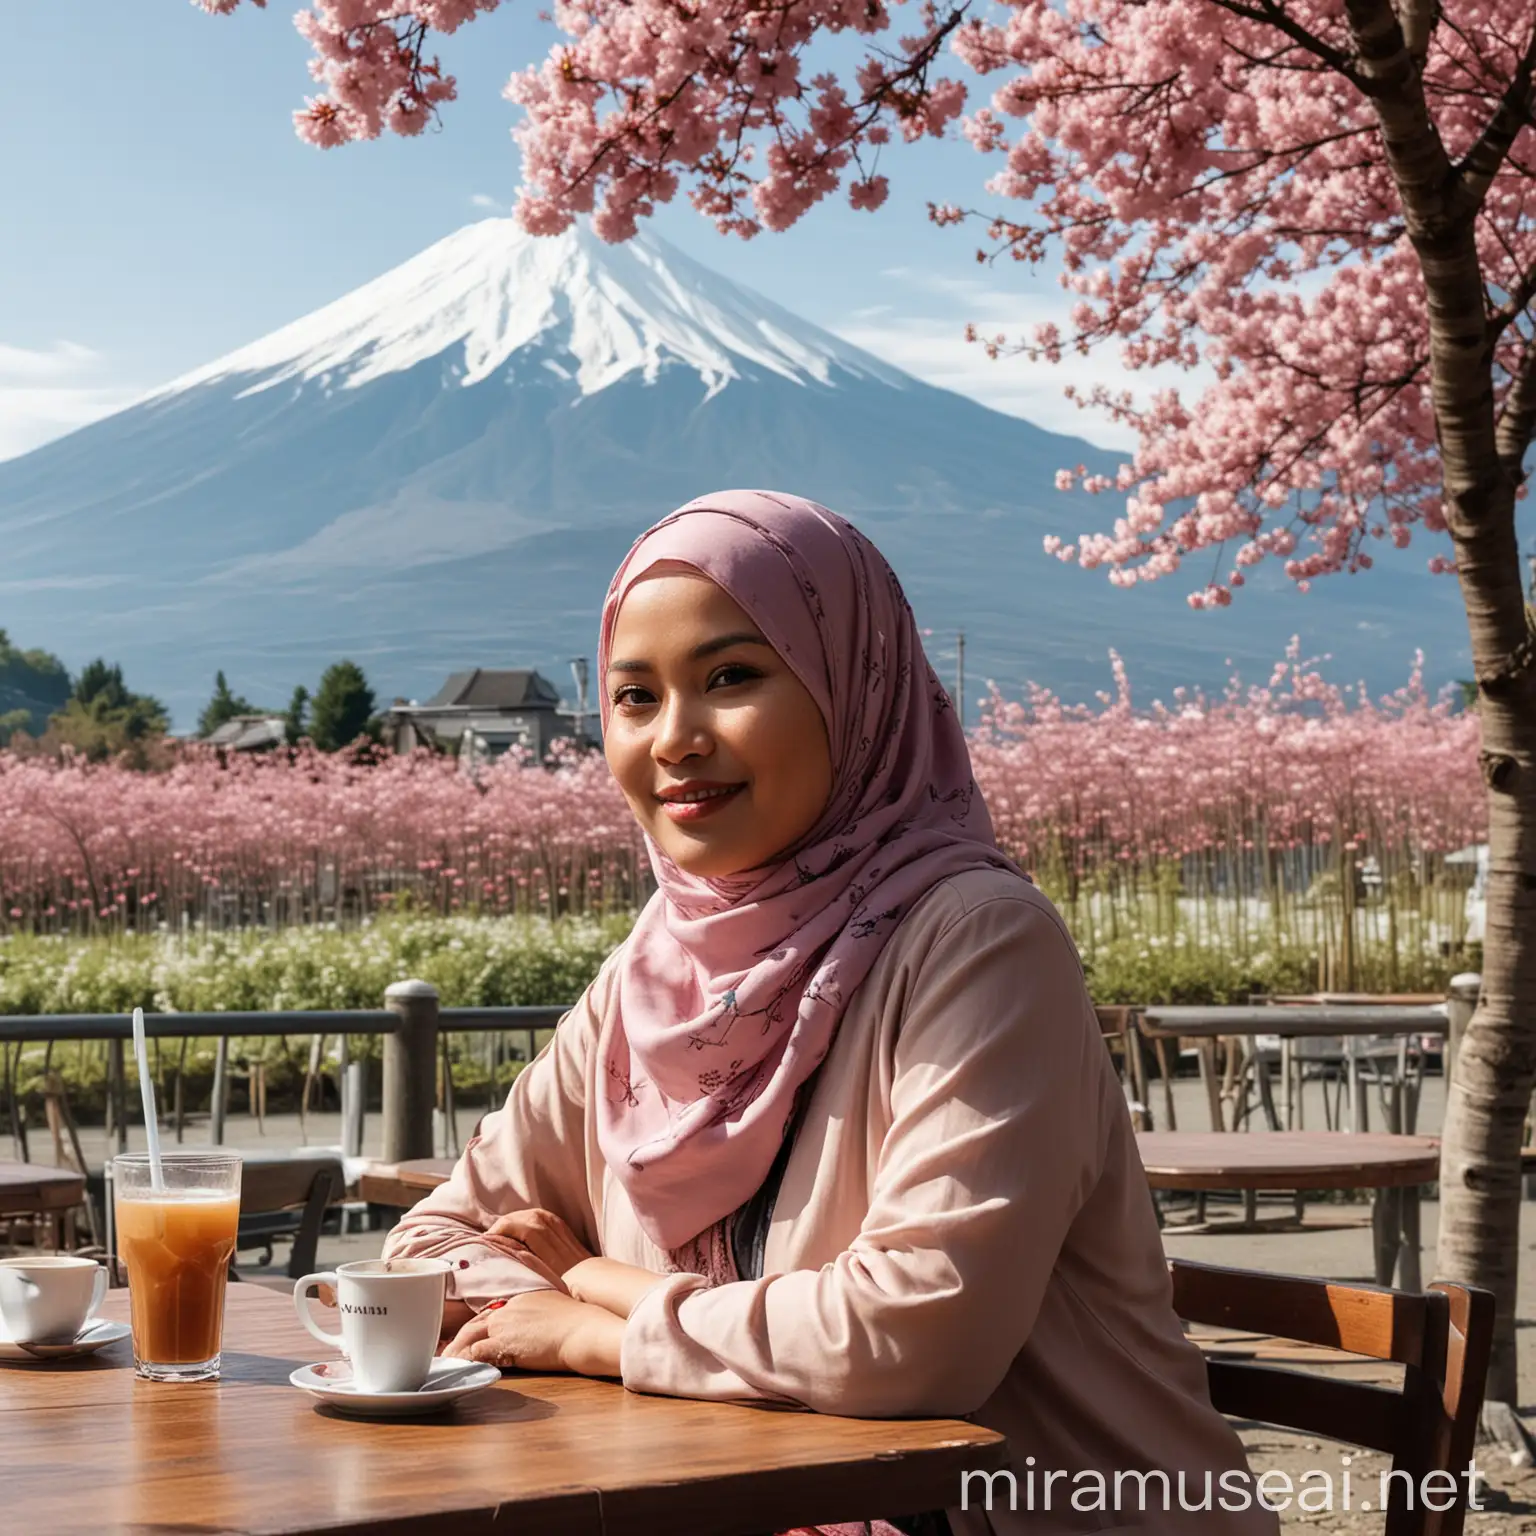 Seorang wanita cantik Indonesia chubby berusia 50 tahun dengan pakaian hijab casual yang trendi sedang duduk di sebuah kafe outdoor, di belakangnya terlihat pemandangan Gunung Fuji yang indah, di dekat wanita tersebut terdapat pohon sakura.